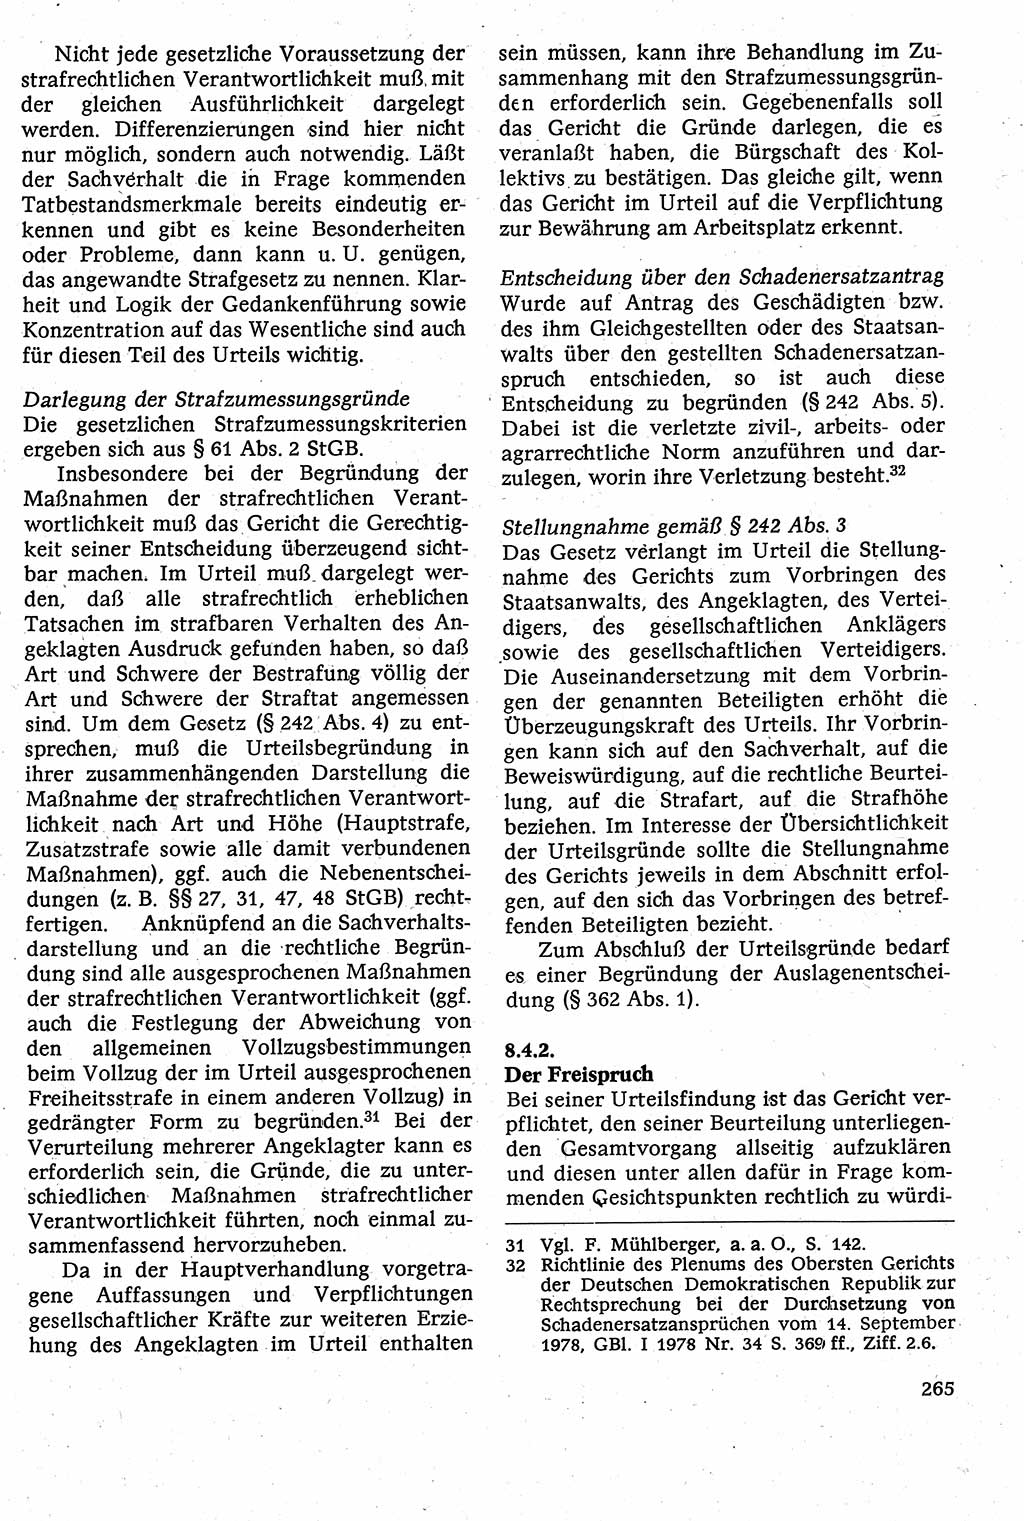 Strafverfahrensrecht [Deutsche Demokratische Republik (DDR)], Lehrbuch 1982, Seite 265 (Strafverf.-R. DDR Lb. 1982, S. 265)